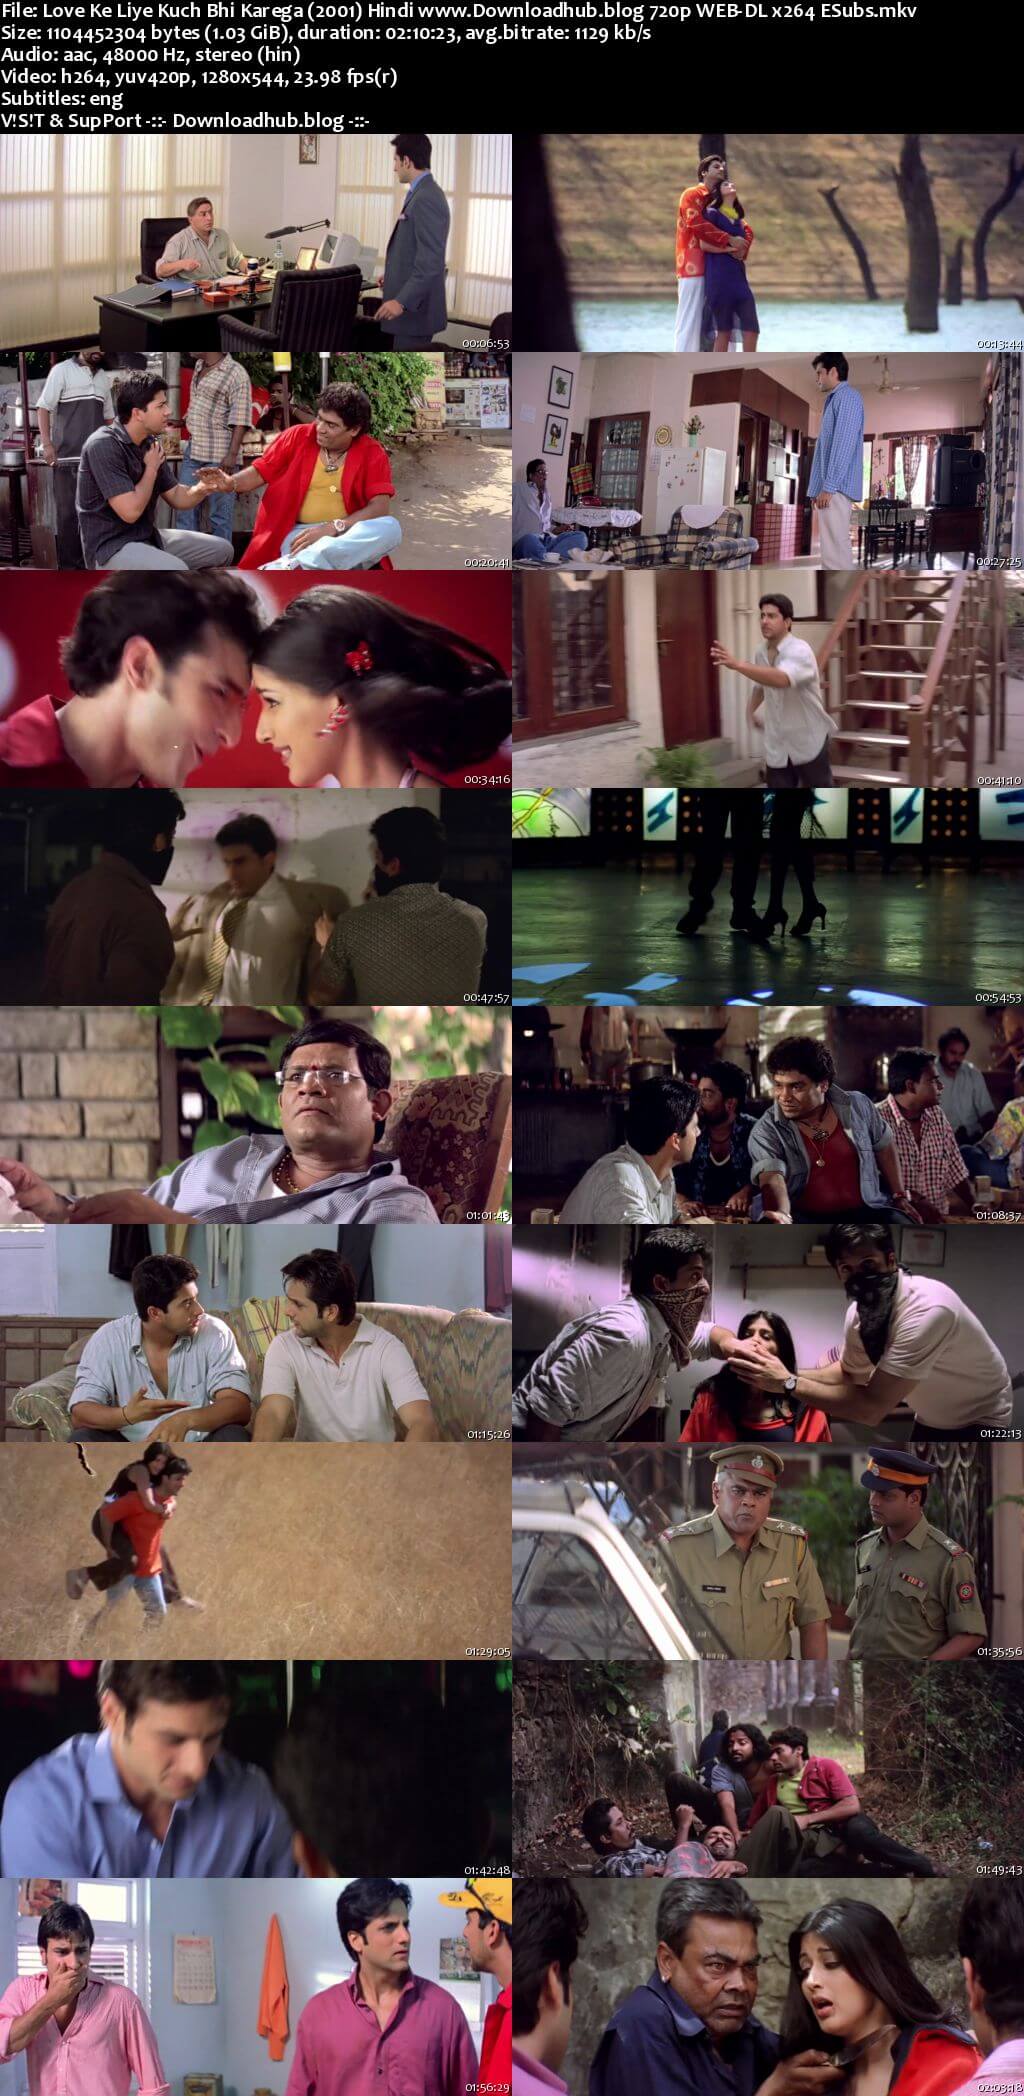 Love Ke Liye Kuch Bhi Karega 2001 Hindi 720p HDRip ESubs